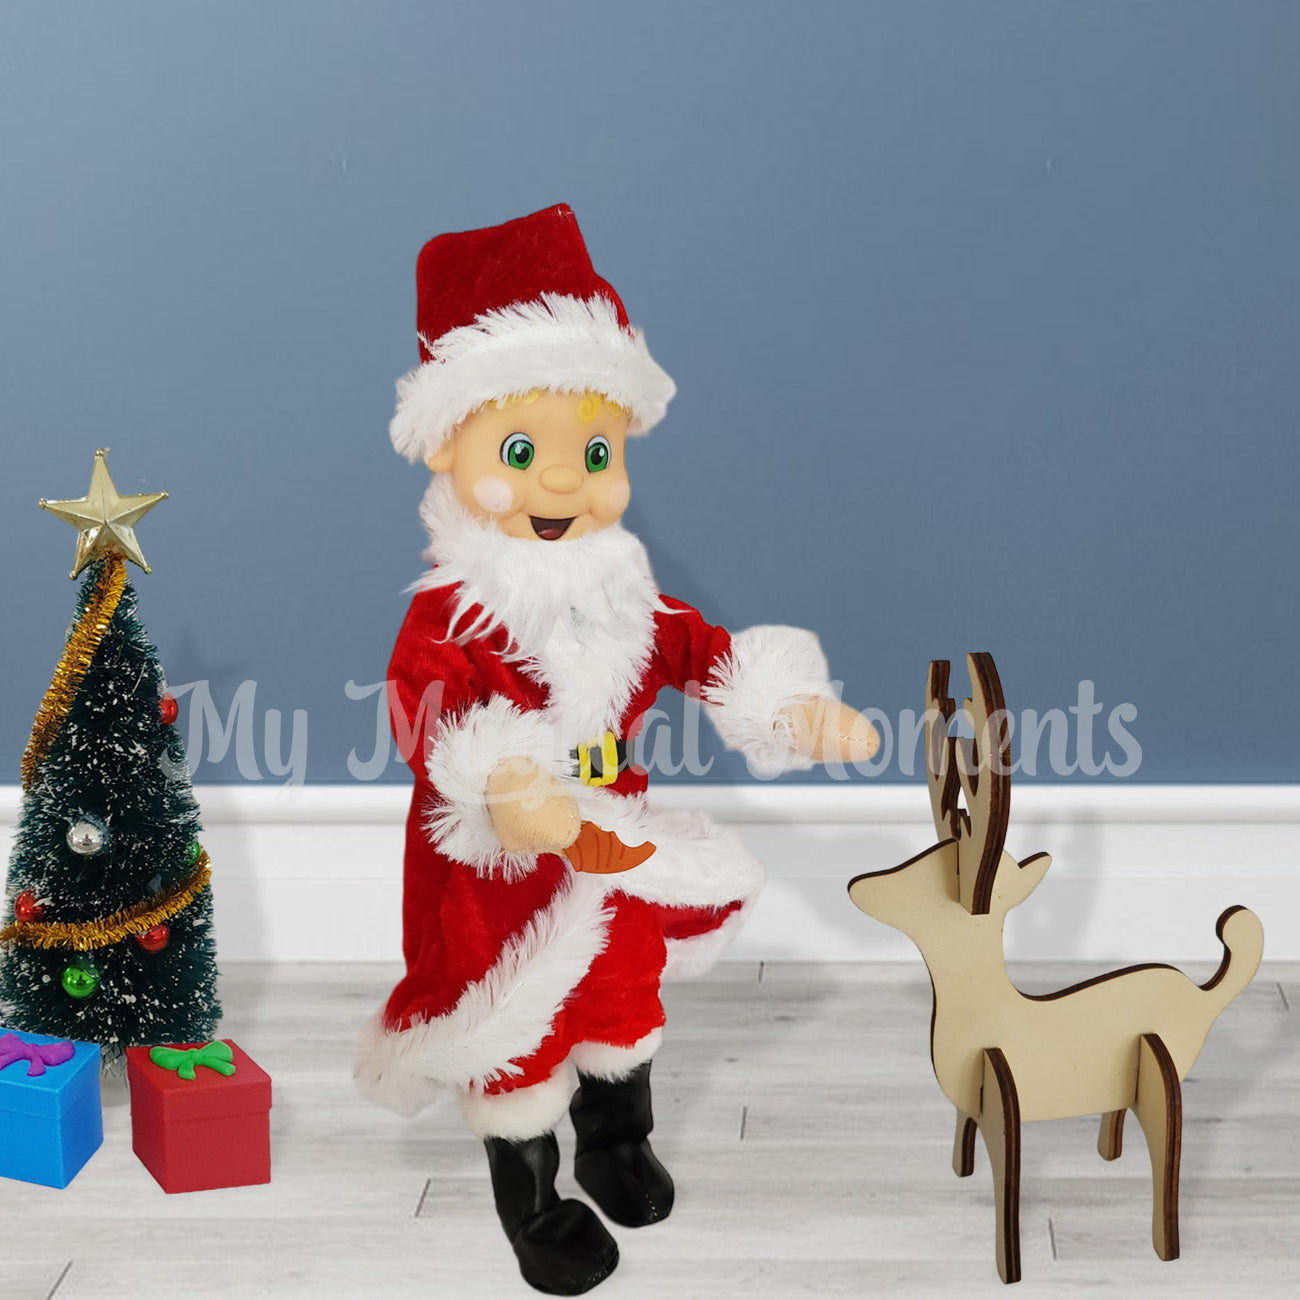 Santa feeding Reindeer with a chirstmas tree